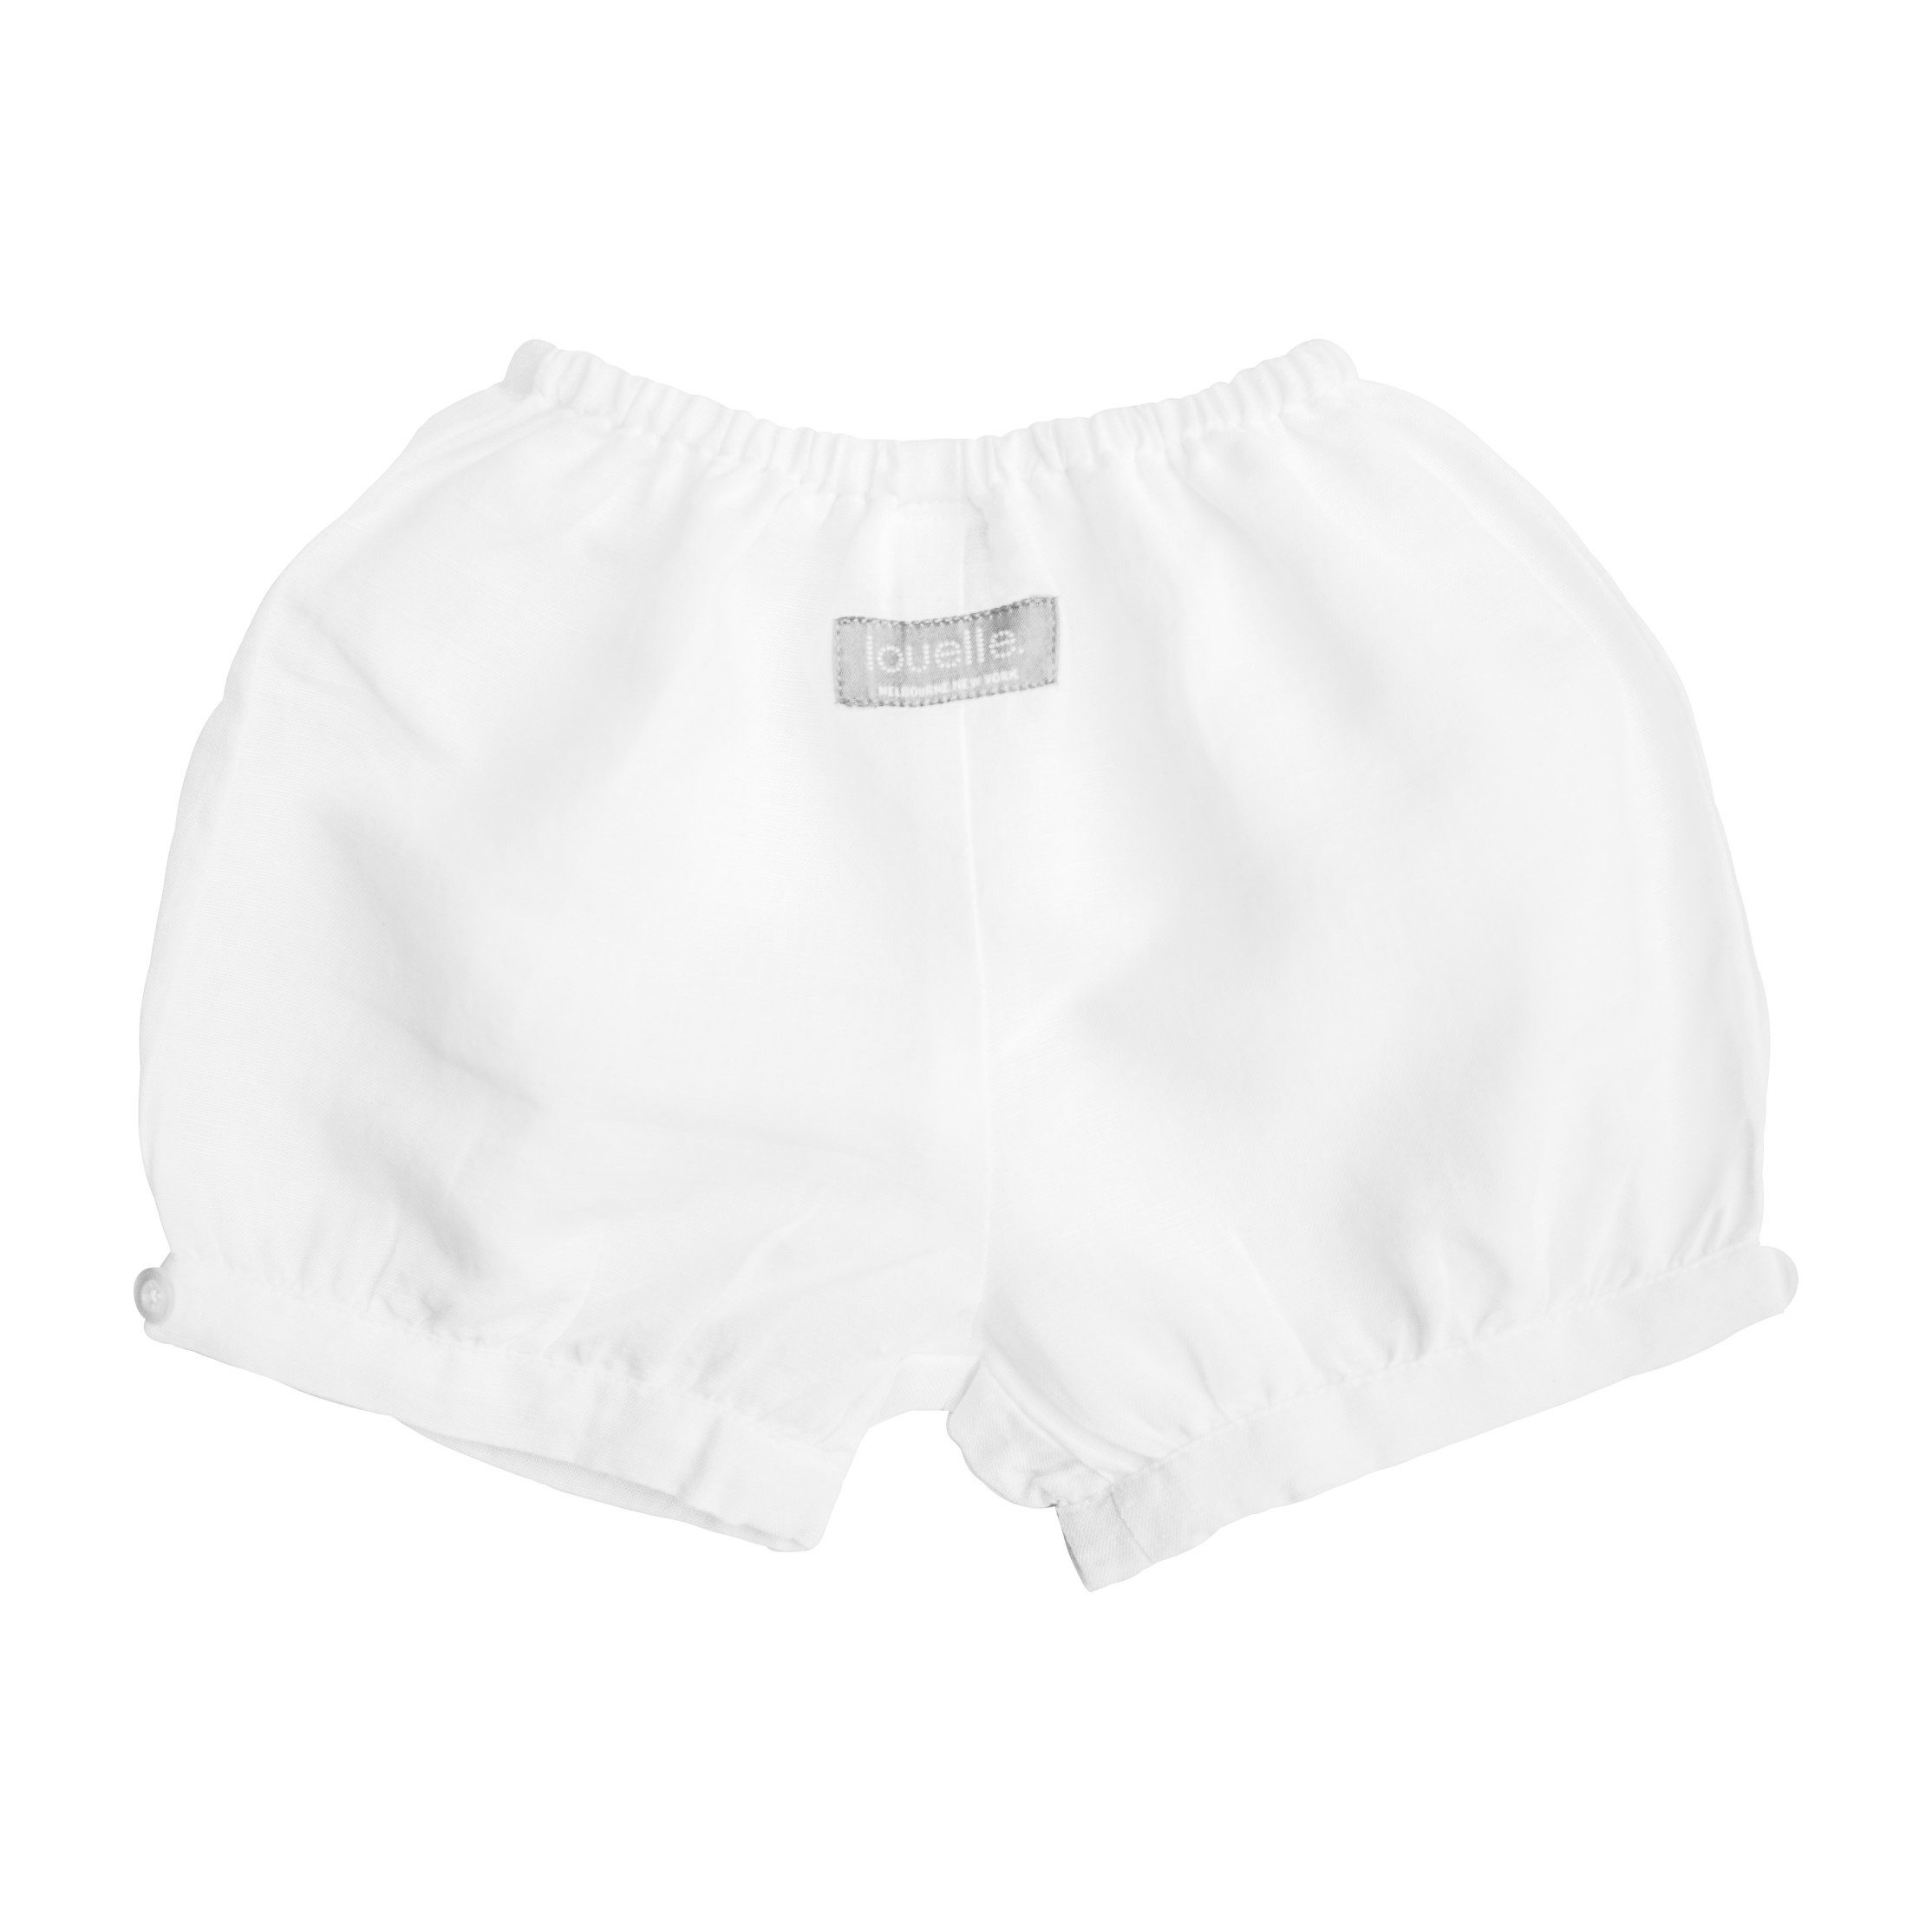 Boys Short, White Linen - Shorts - Maisonette